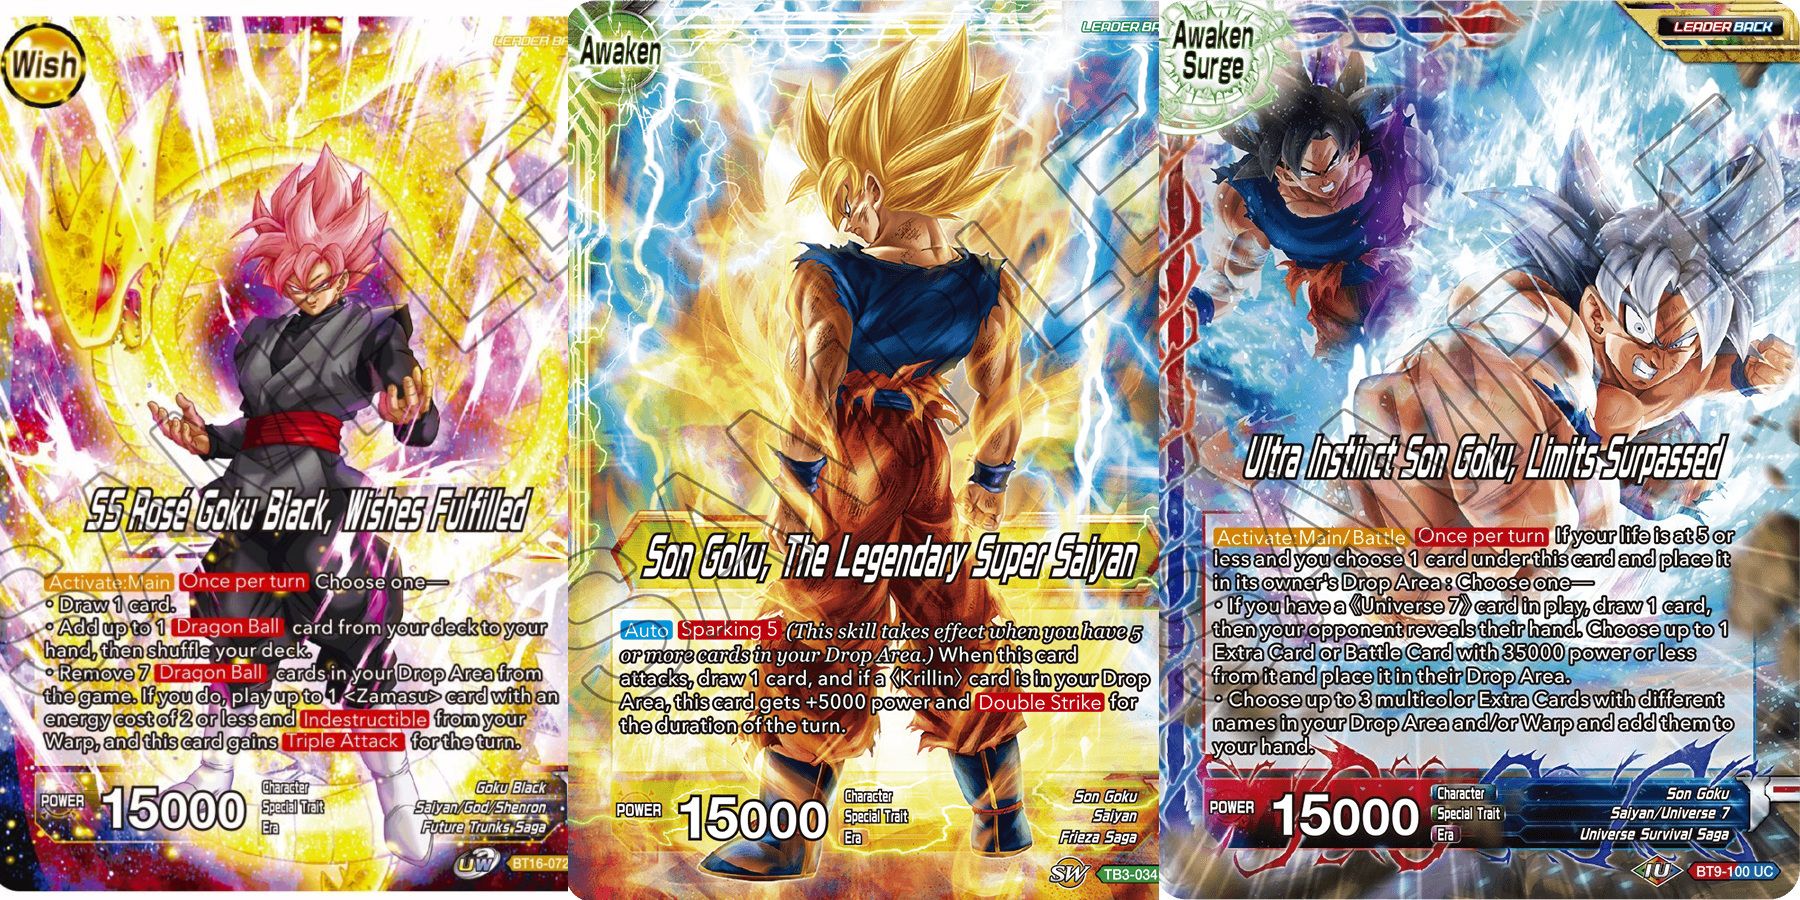 A Zamasu/Goku Black Wish Leader, a Goku Awaken Leader, and A Goku Awaken Surge Leader in Dragon Ball Super Card Game